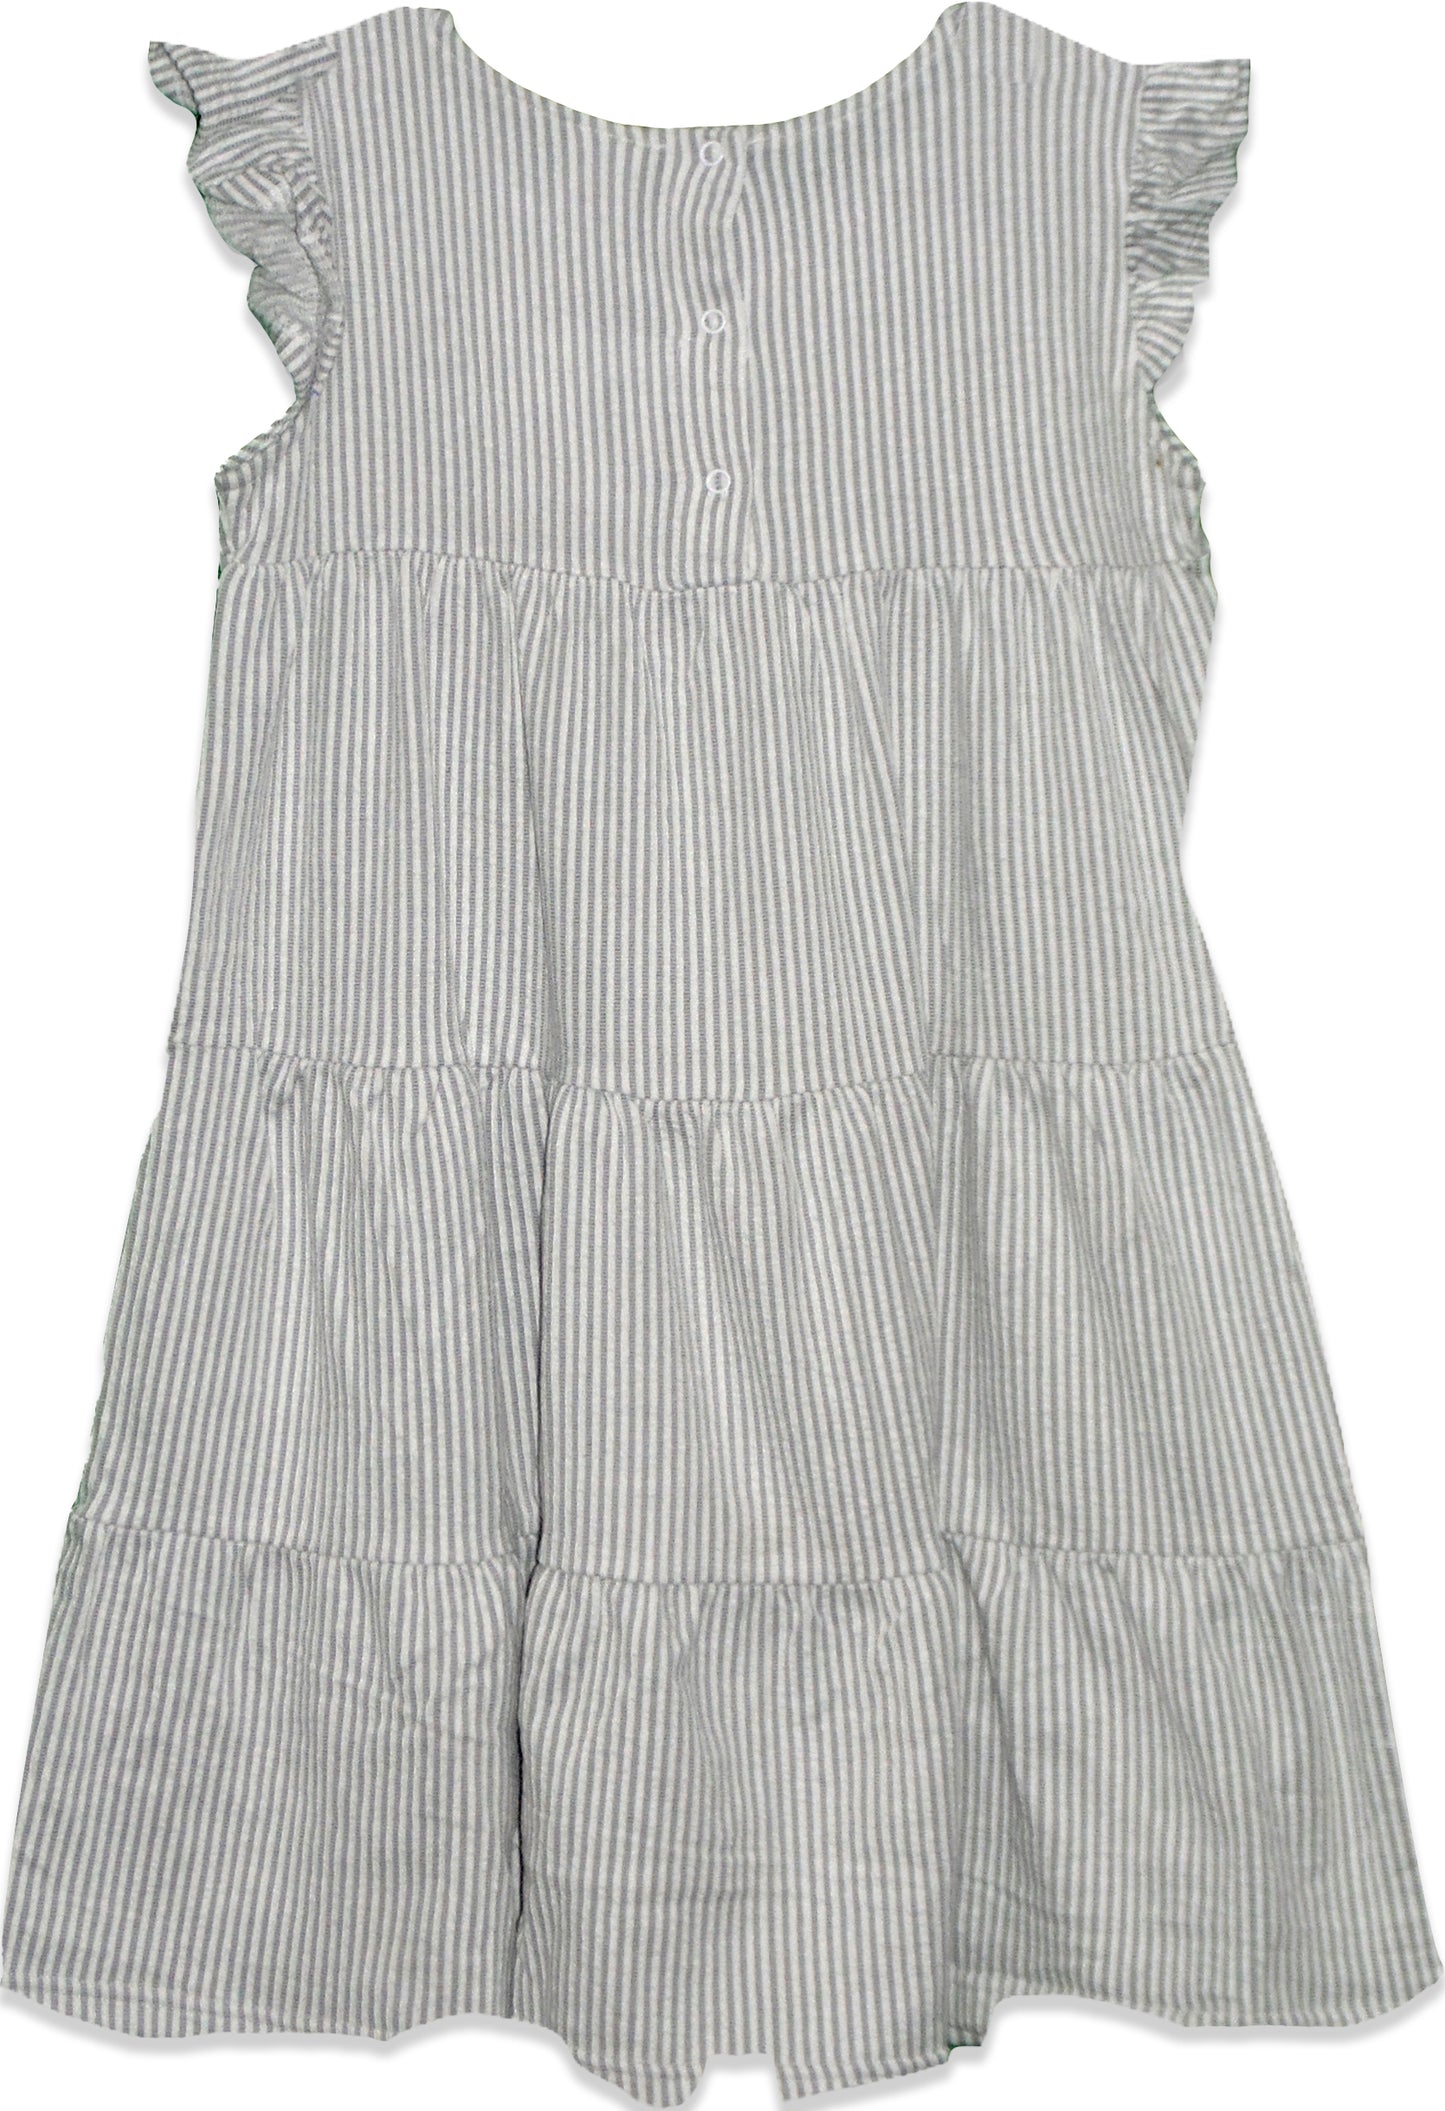 Girls frill cap sleeve A-line tiered Seersucker Cotton Dress